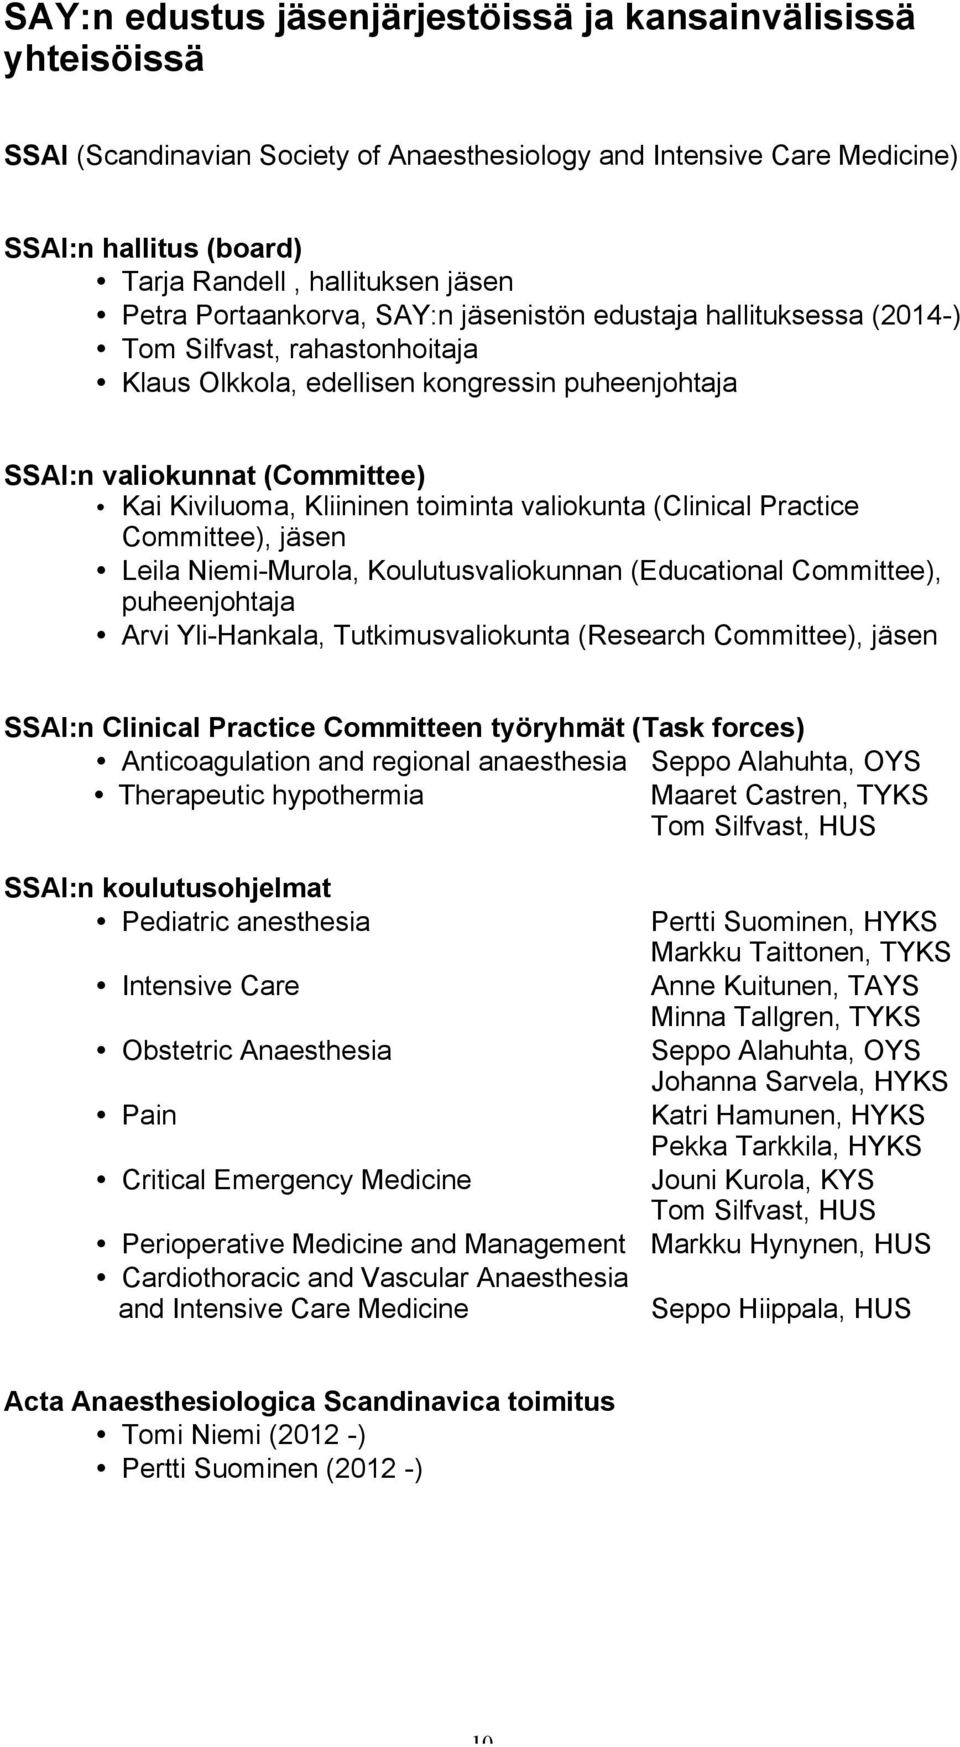 Kliininen toiminta valiokunta (Clinical Practice Committee), jäsen Leila Niemi-Murola, Koulutusvaliokunnan (Educational Committee), puheenjohtaja Arvi Yli-Hankala, Tutkimusvaliokunta (Research